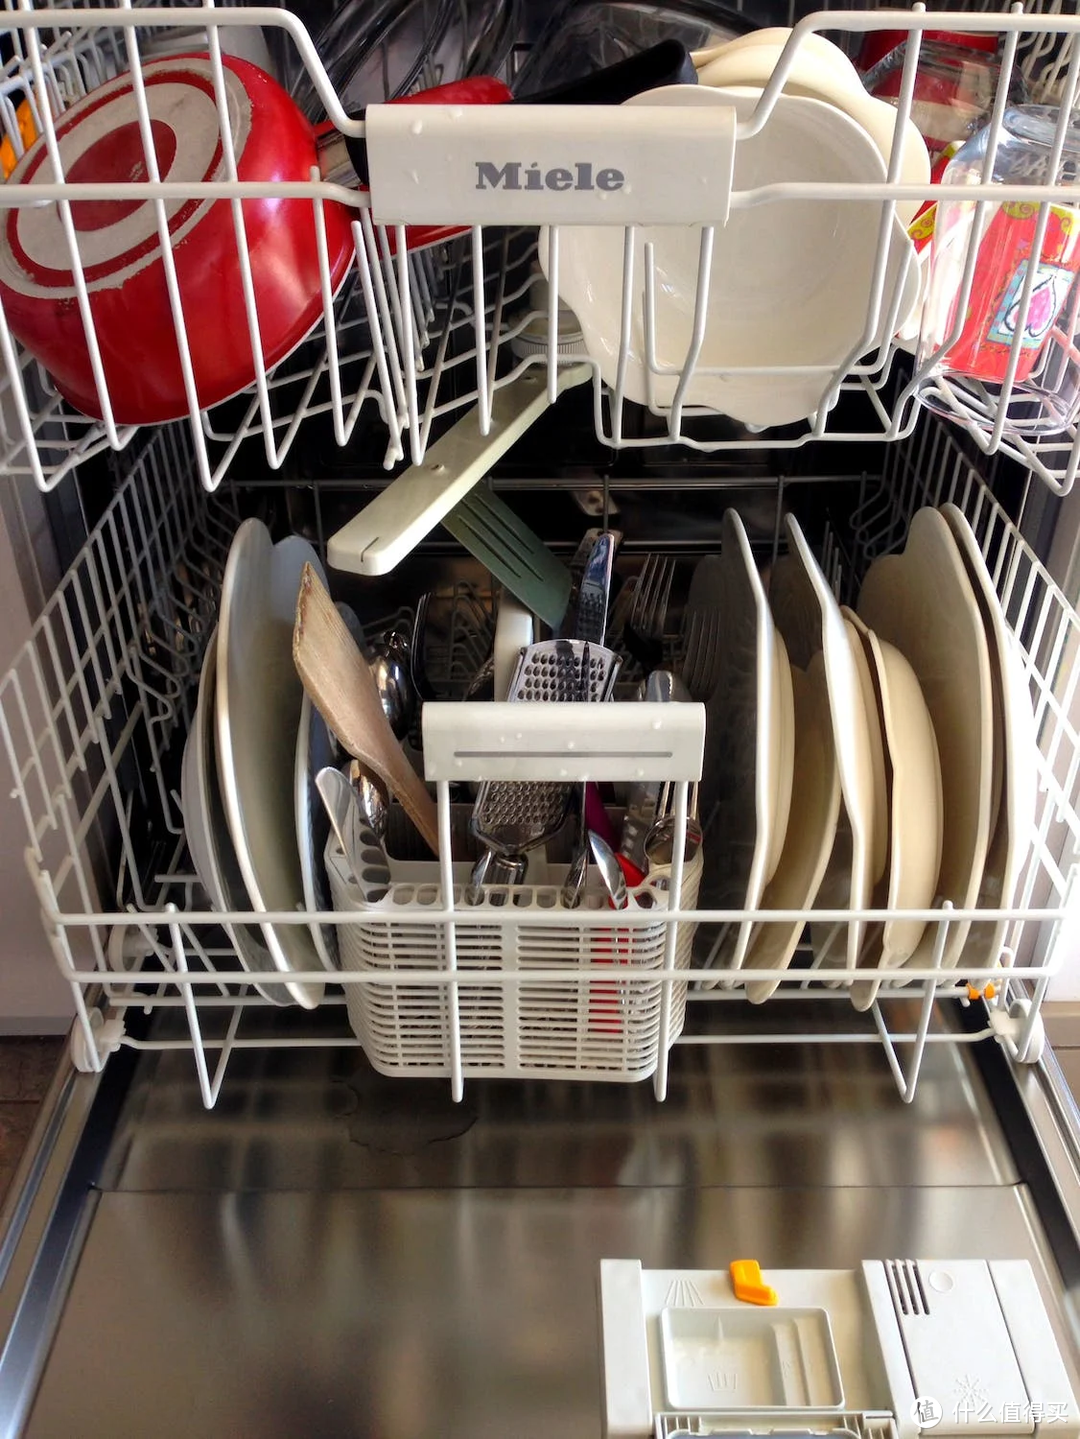 双 11 想买洗碗机?超强海尔洗碗机选购攻略看这里